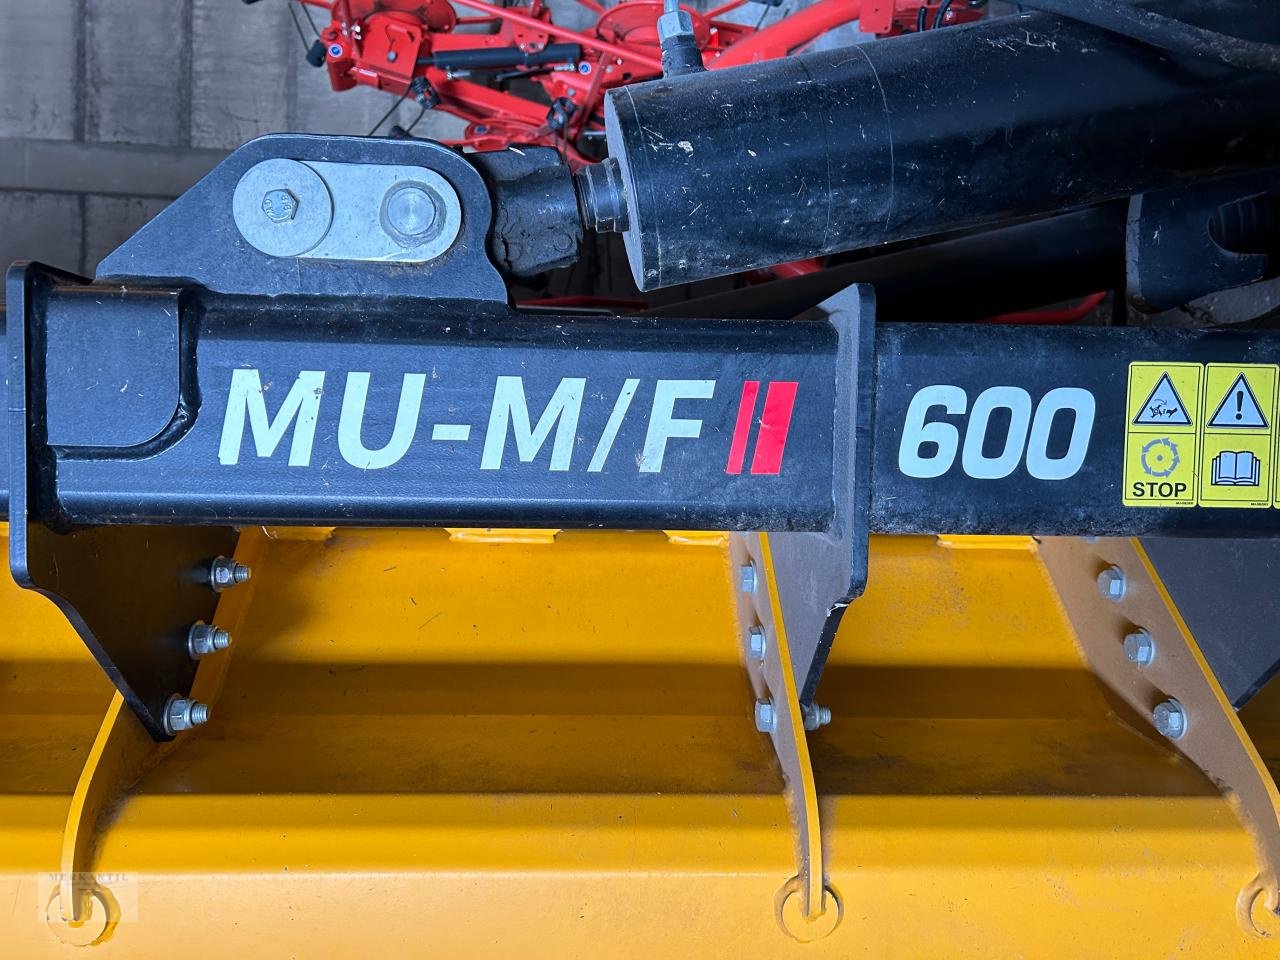 Mulcher типа Müthing MU-M/F II 600, Gebrauchtmaschine в Pragsdorf (Фотография 2)